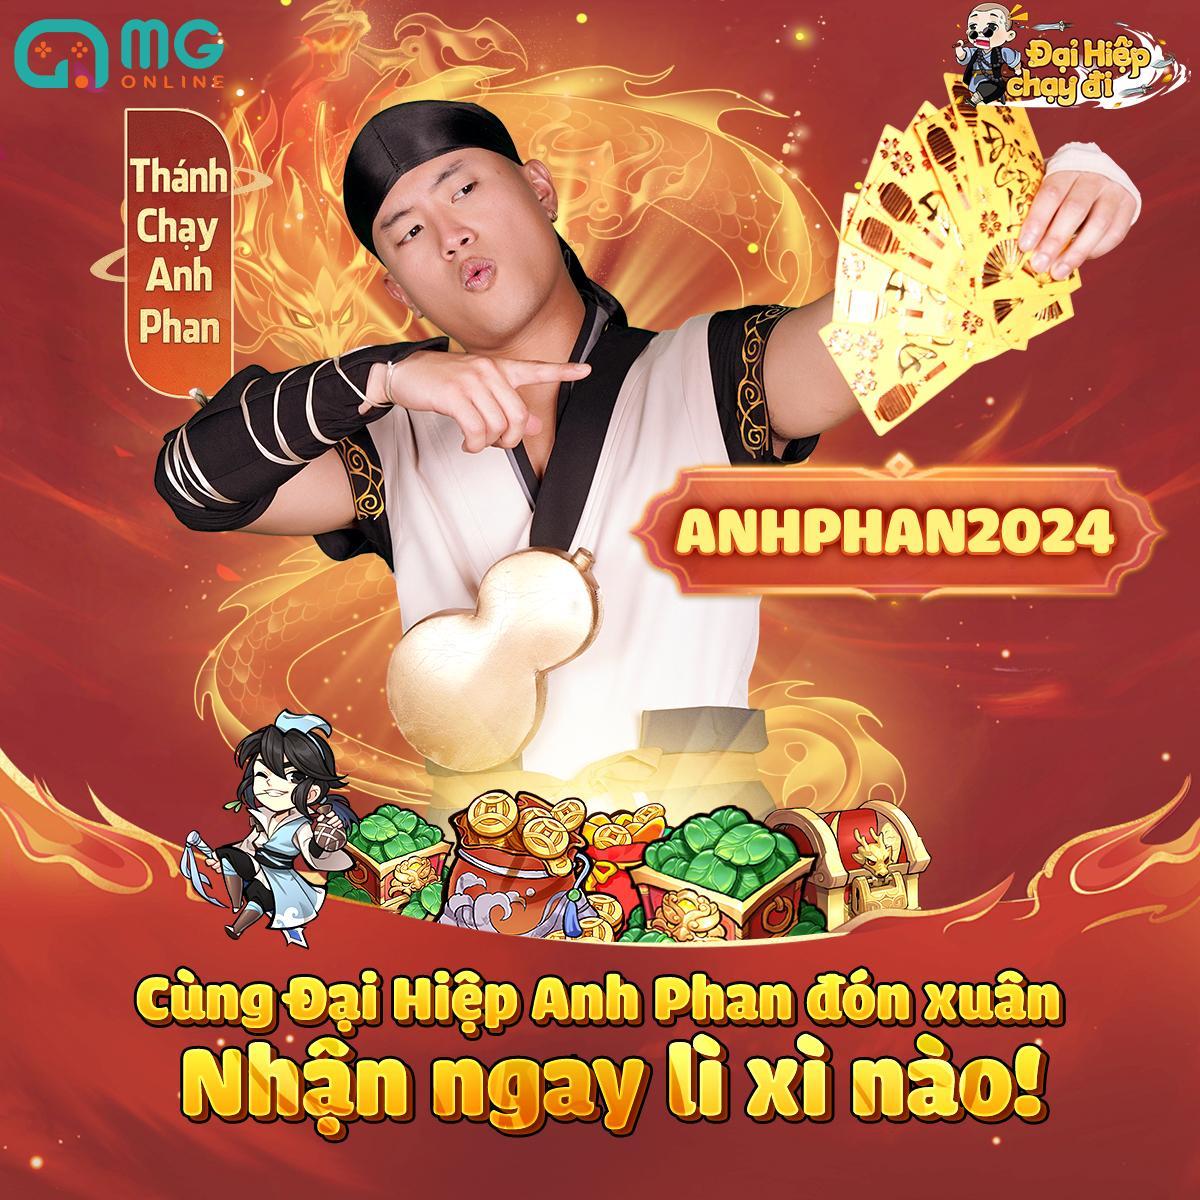 Rapper Anh Phan lần đầu đóng quảng cáo cùng Minh Lai - Ảnh 5.